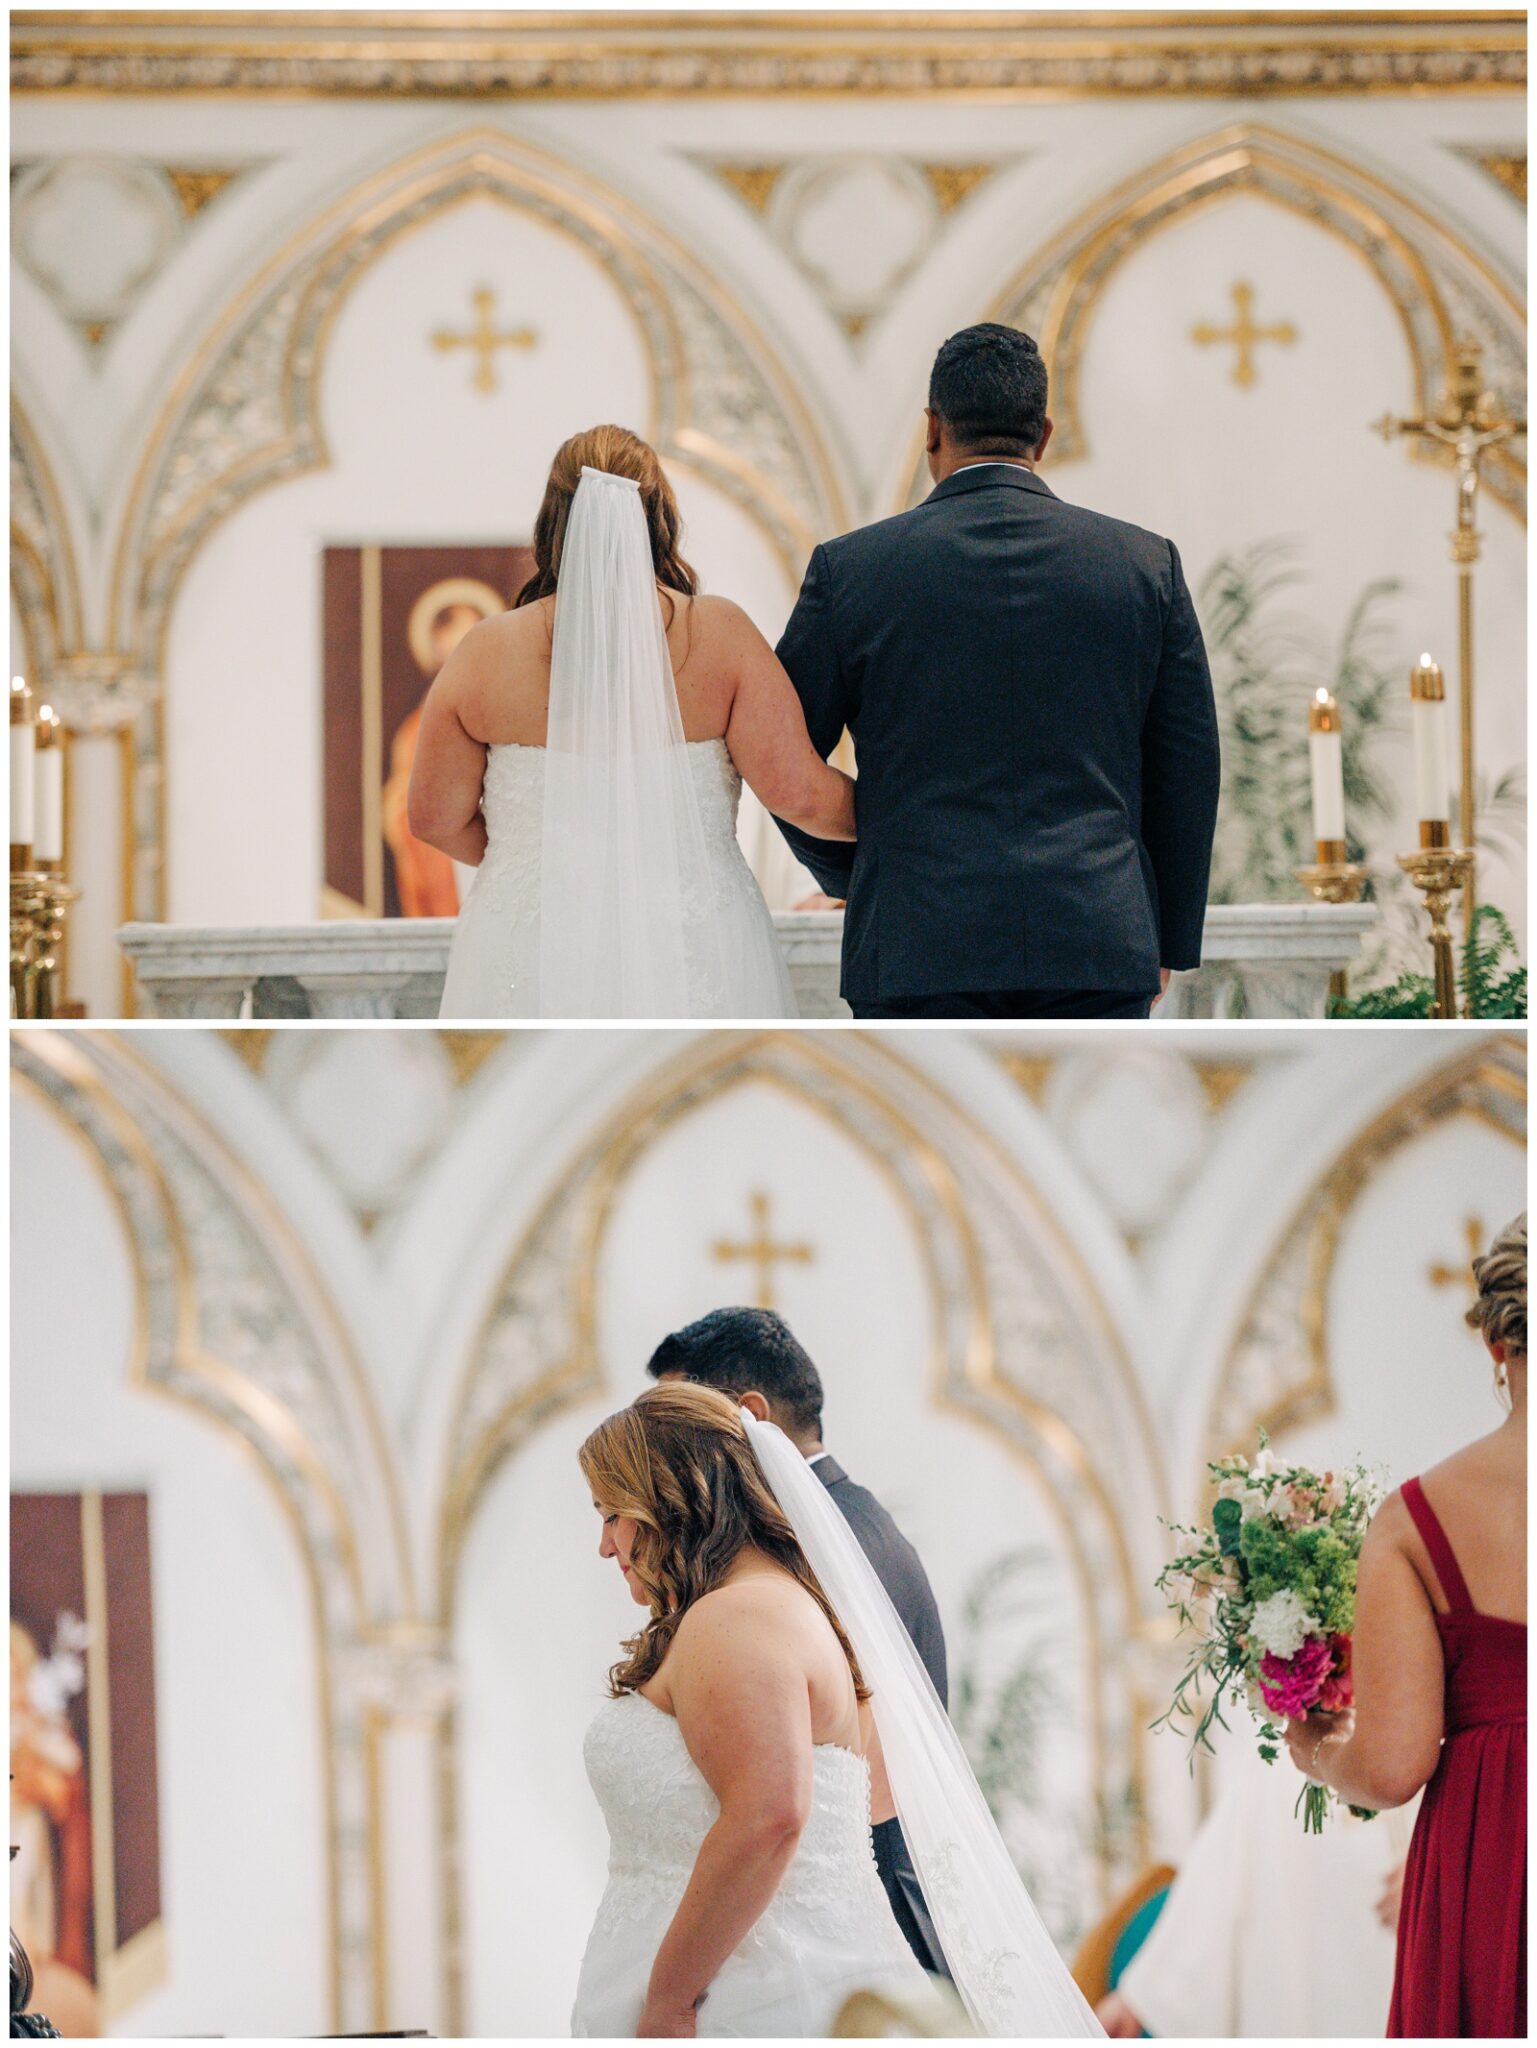 Lake Erie Wedding,Saint Joseph Cathedral Buffalo NY,Suncliff on the Lake,Western New York Wedding,